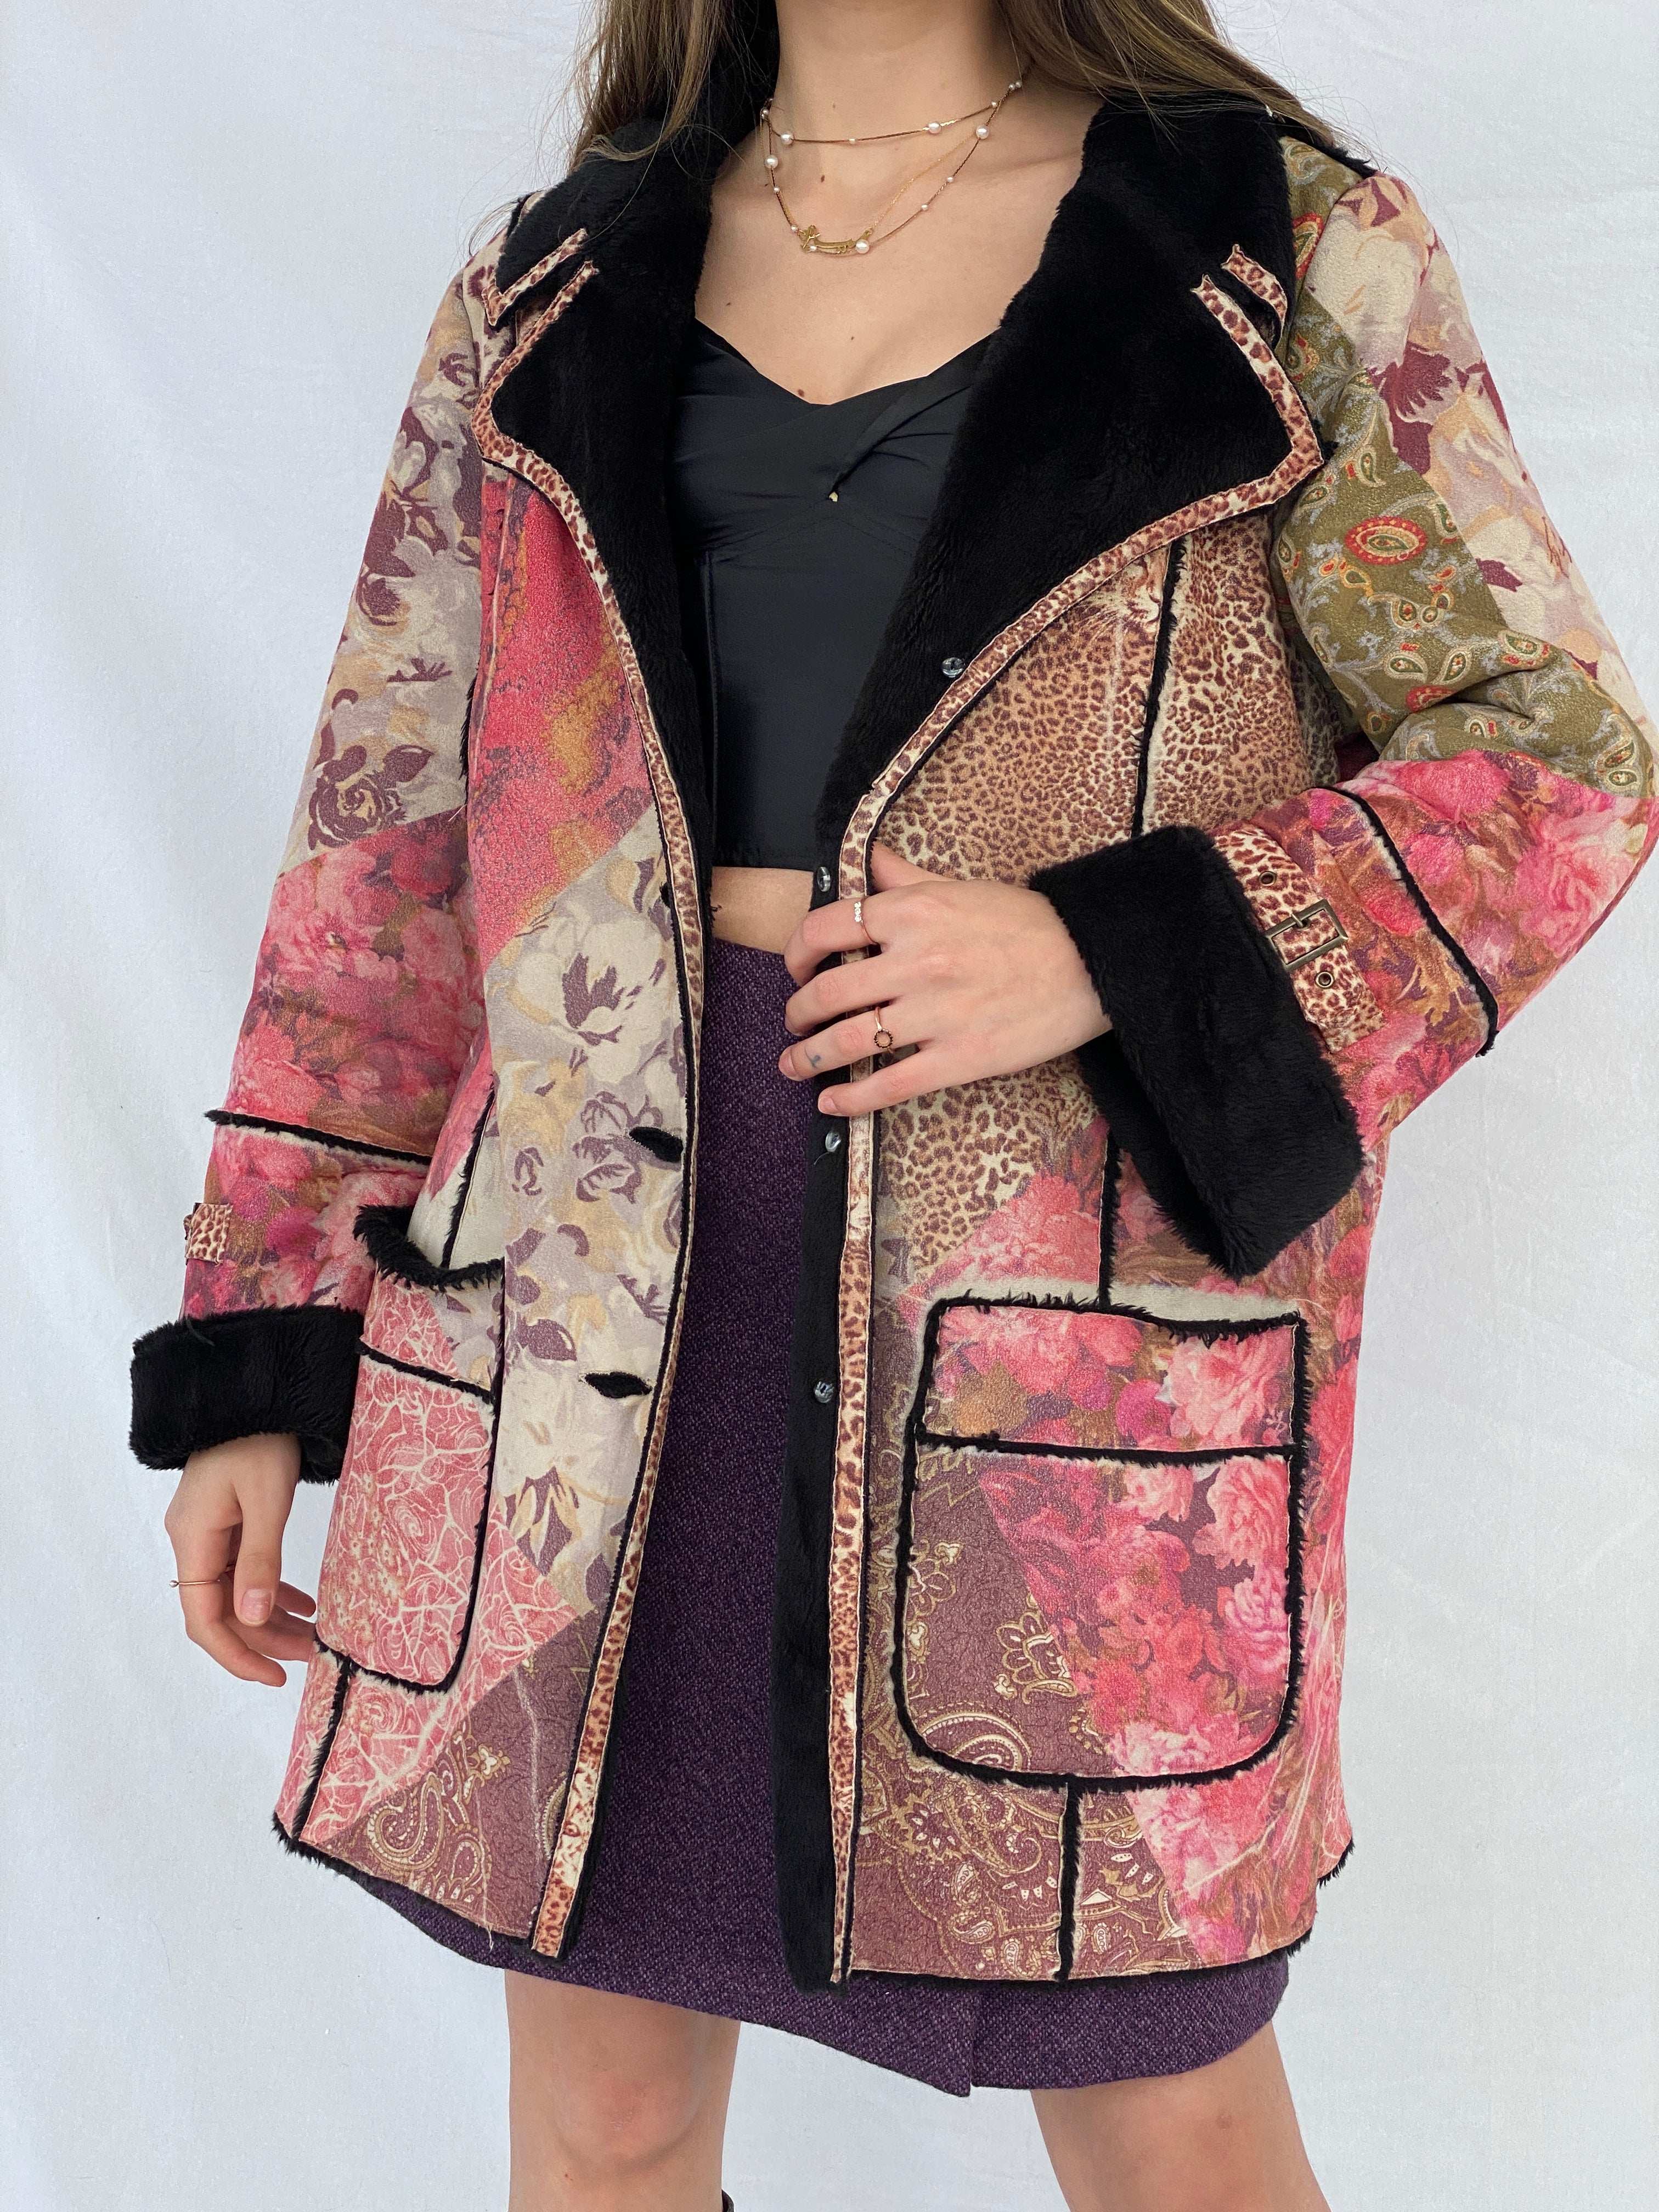 Beautiful Vintage KRISS Sweden Floral Afghan Style Fur-Lined Coat - Size Large - Balagan Vintage Coat 00s, Afghan style, coat, Mira, NEW IN, vintage coat